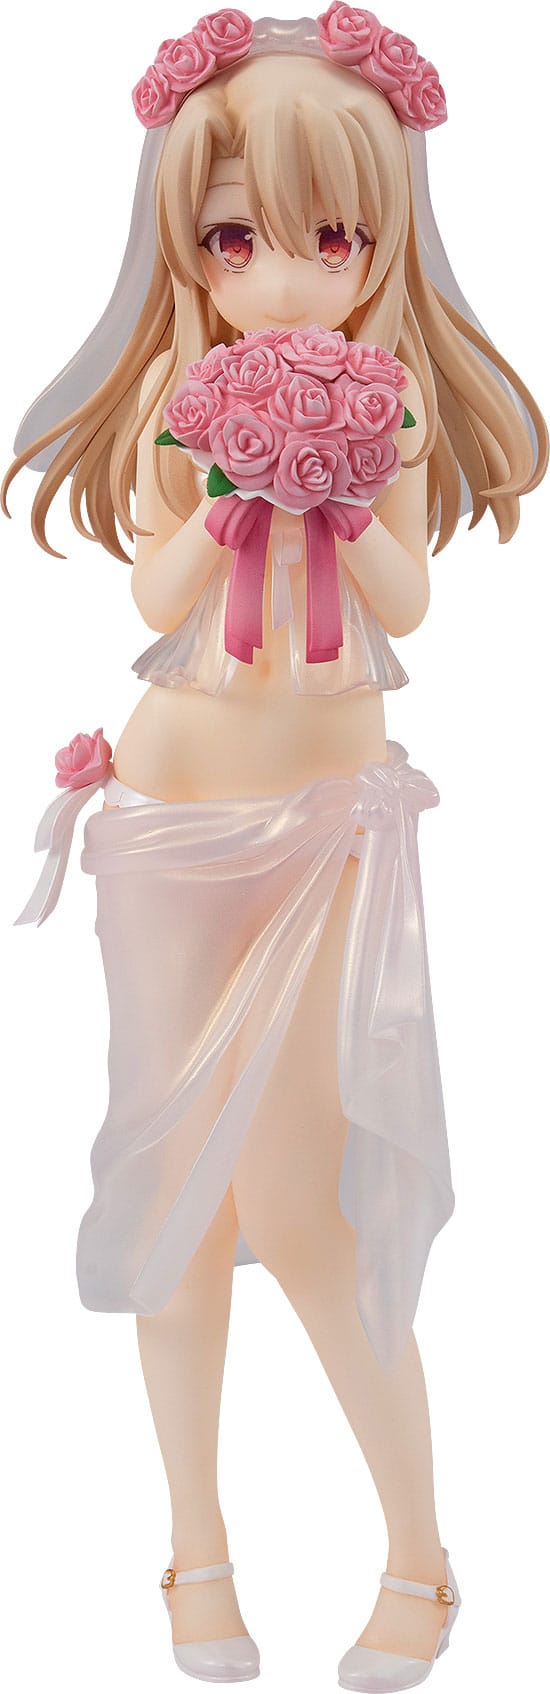 Fate/kaleid liner Prisma Illya PVC Statue 1/7 Illyasviel von Einzbern: Wedding Bikini Ver. (re-run) 21 cm